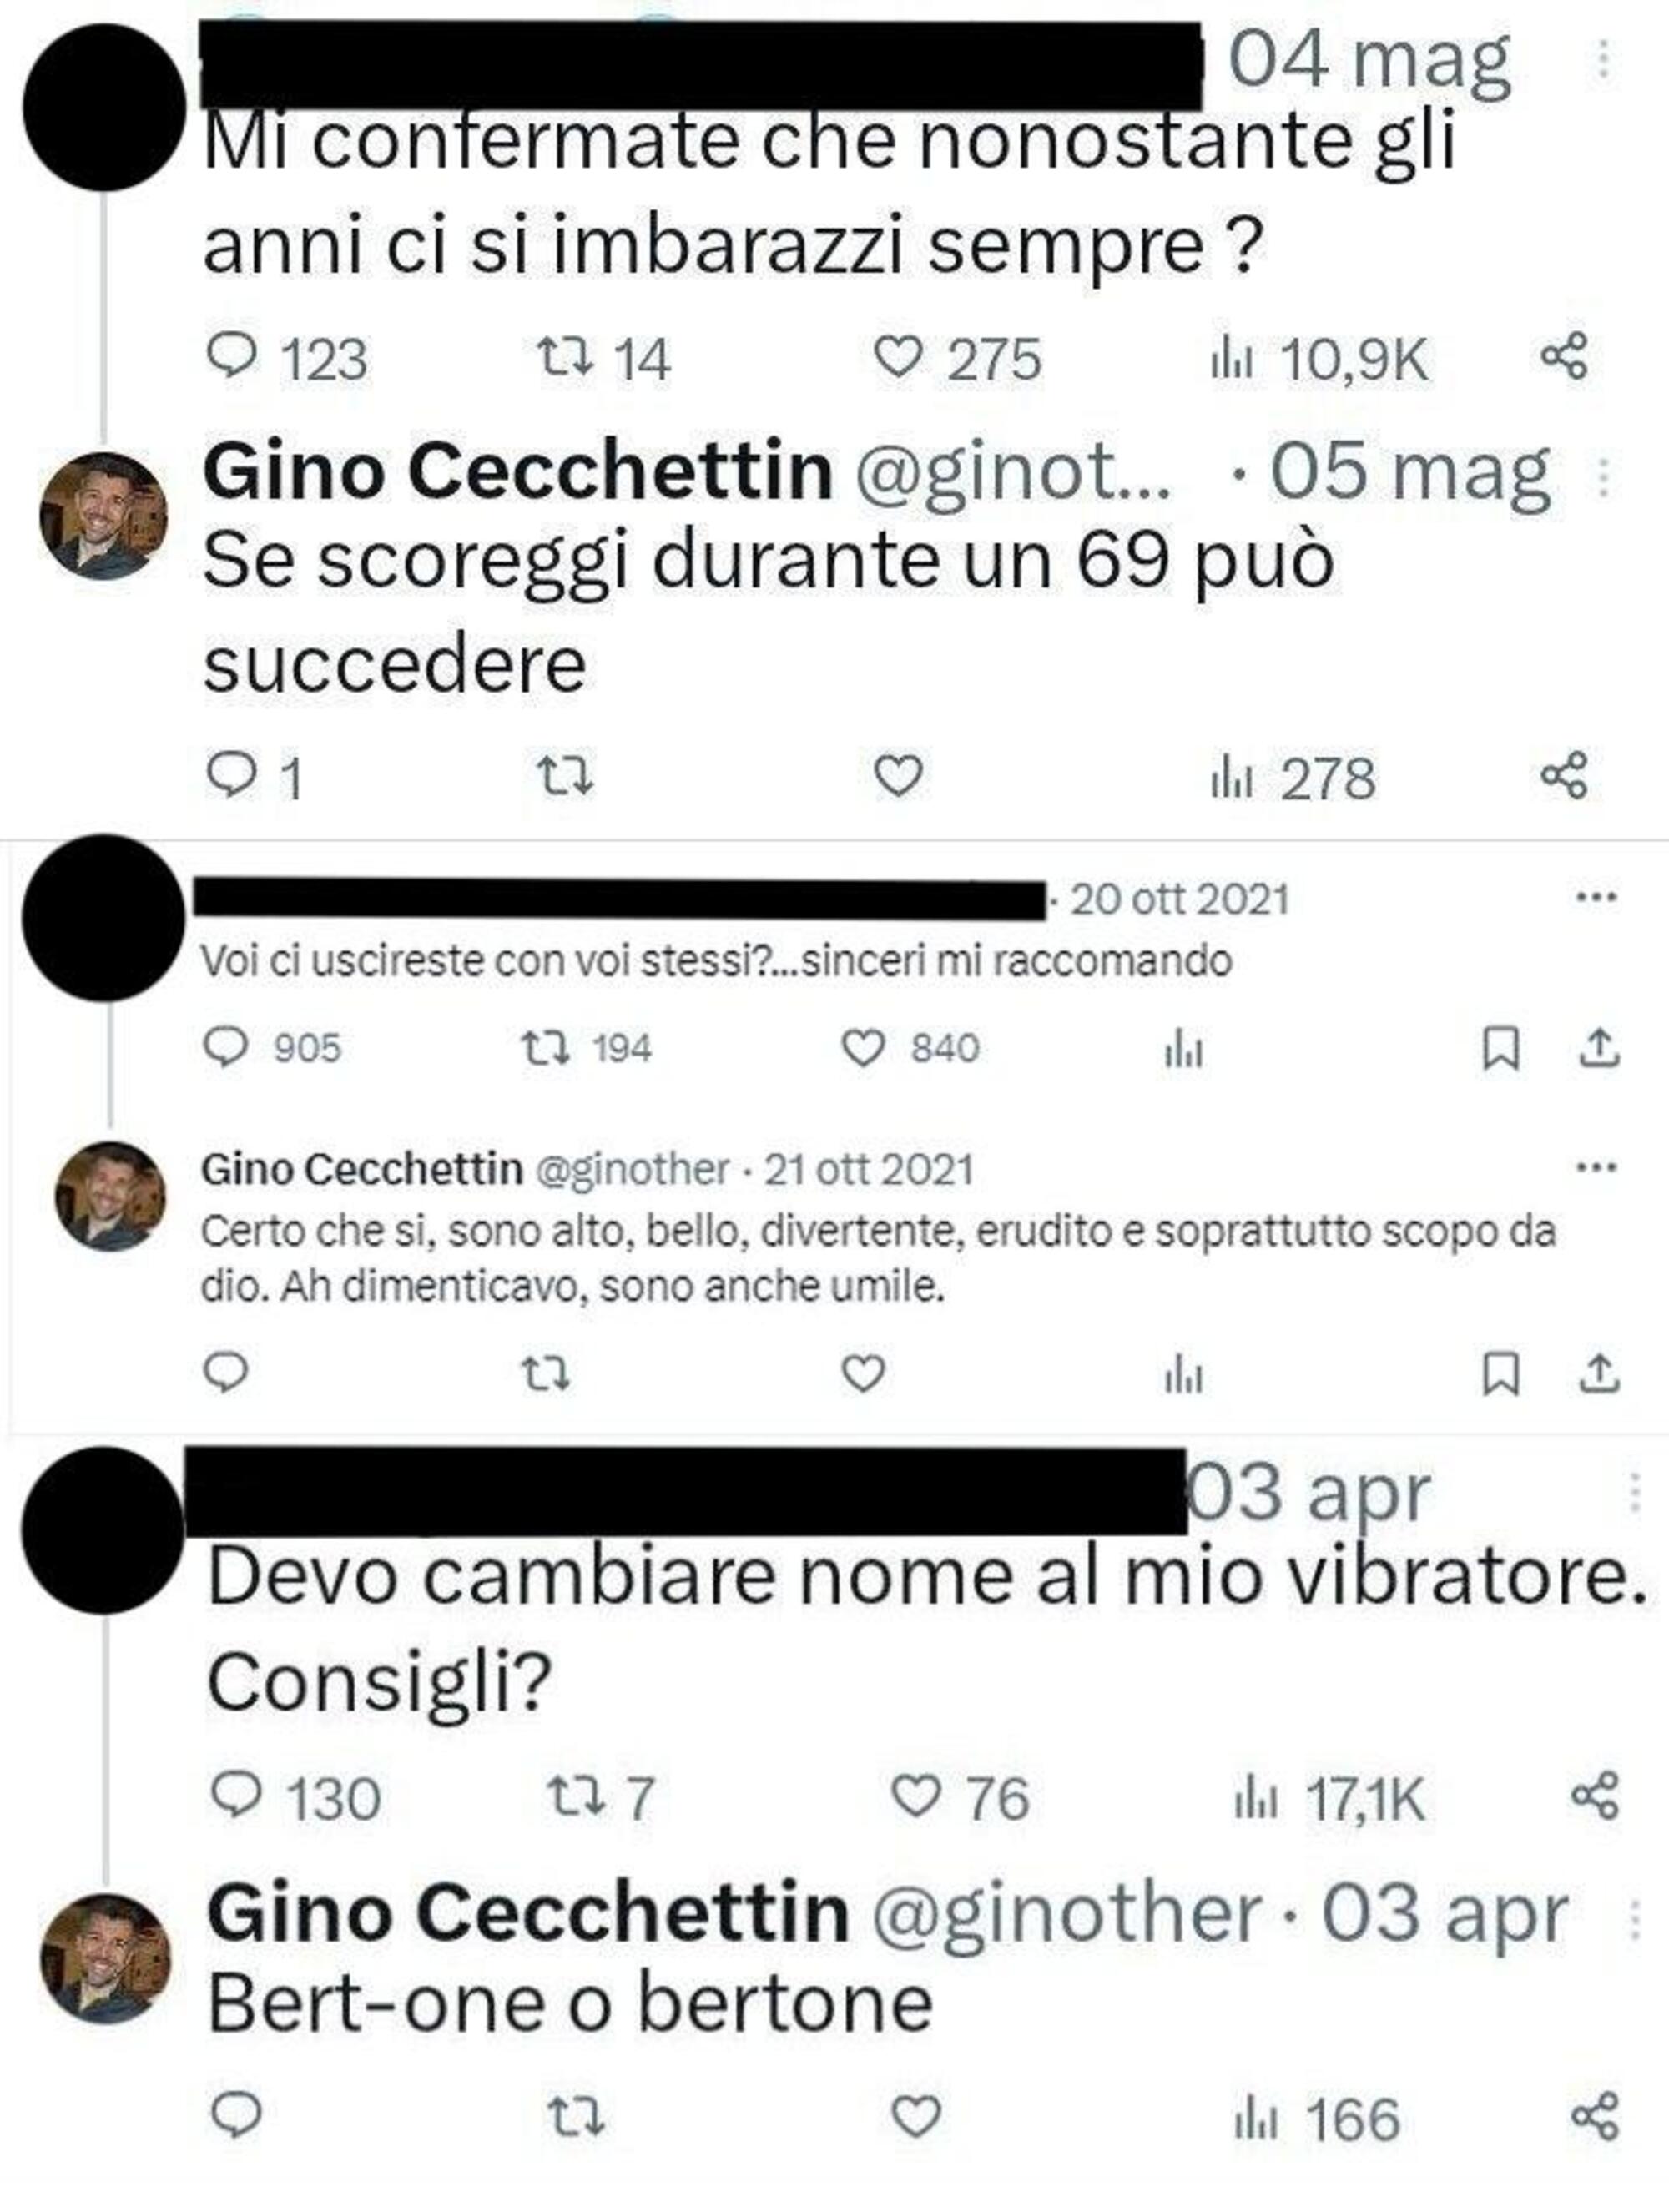 Alcuni dei tweet attribuiti a Gino Cecchettin